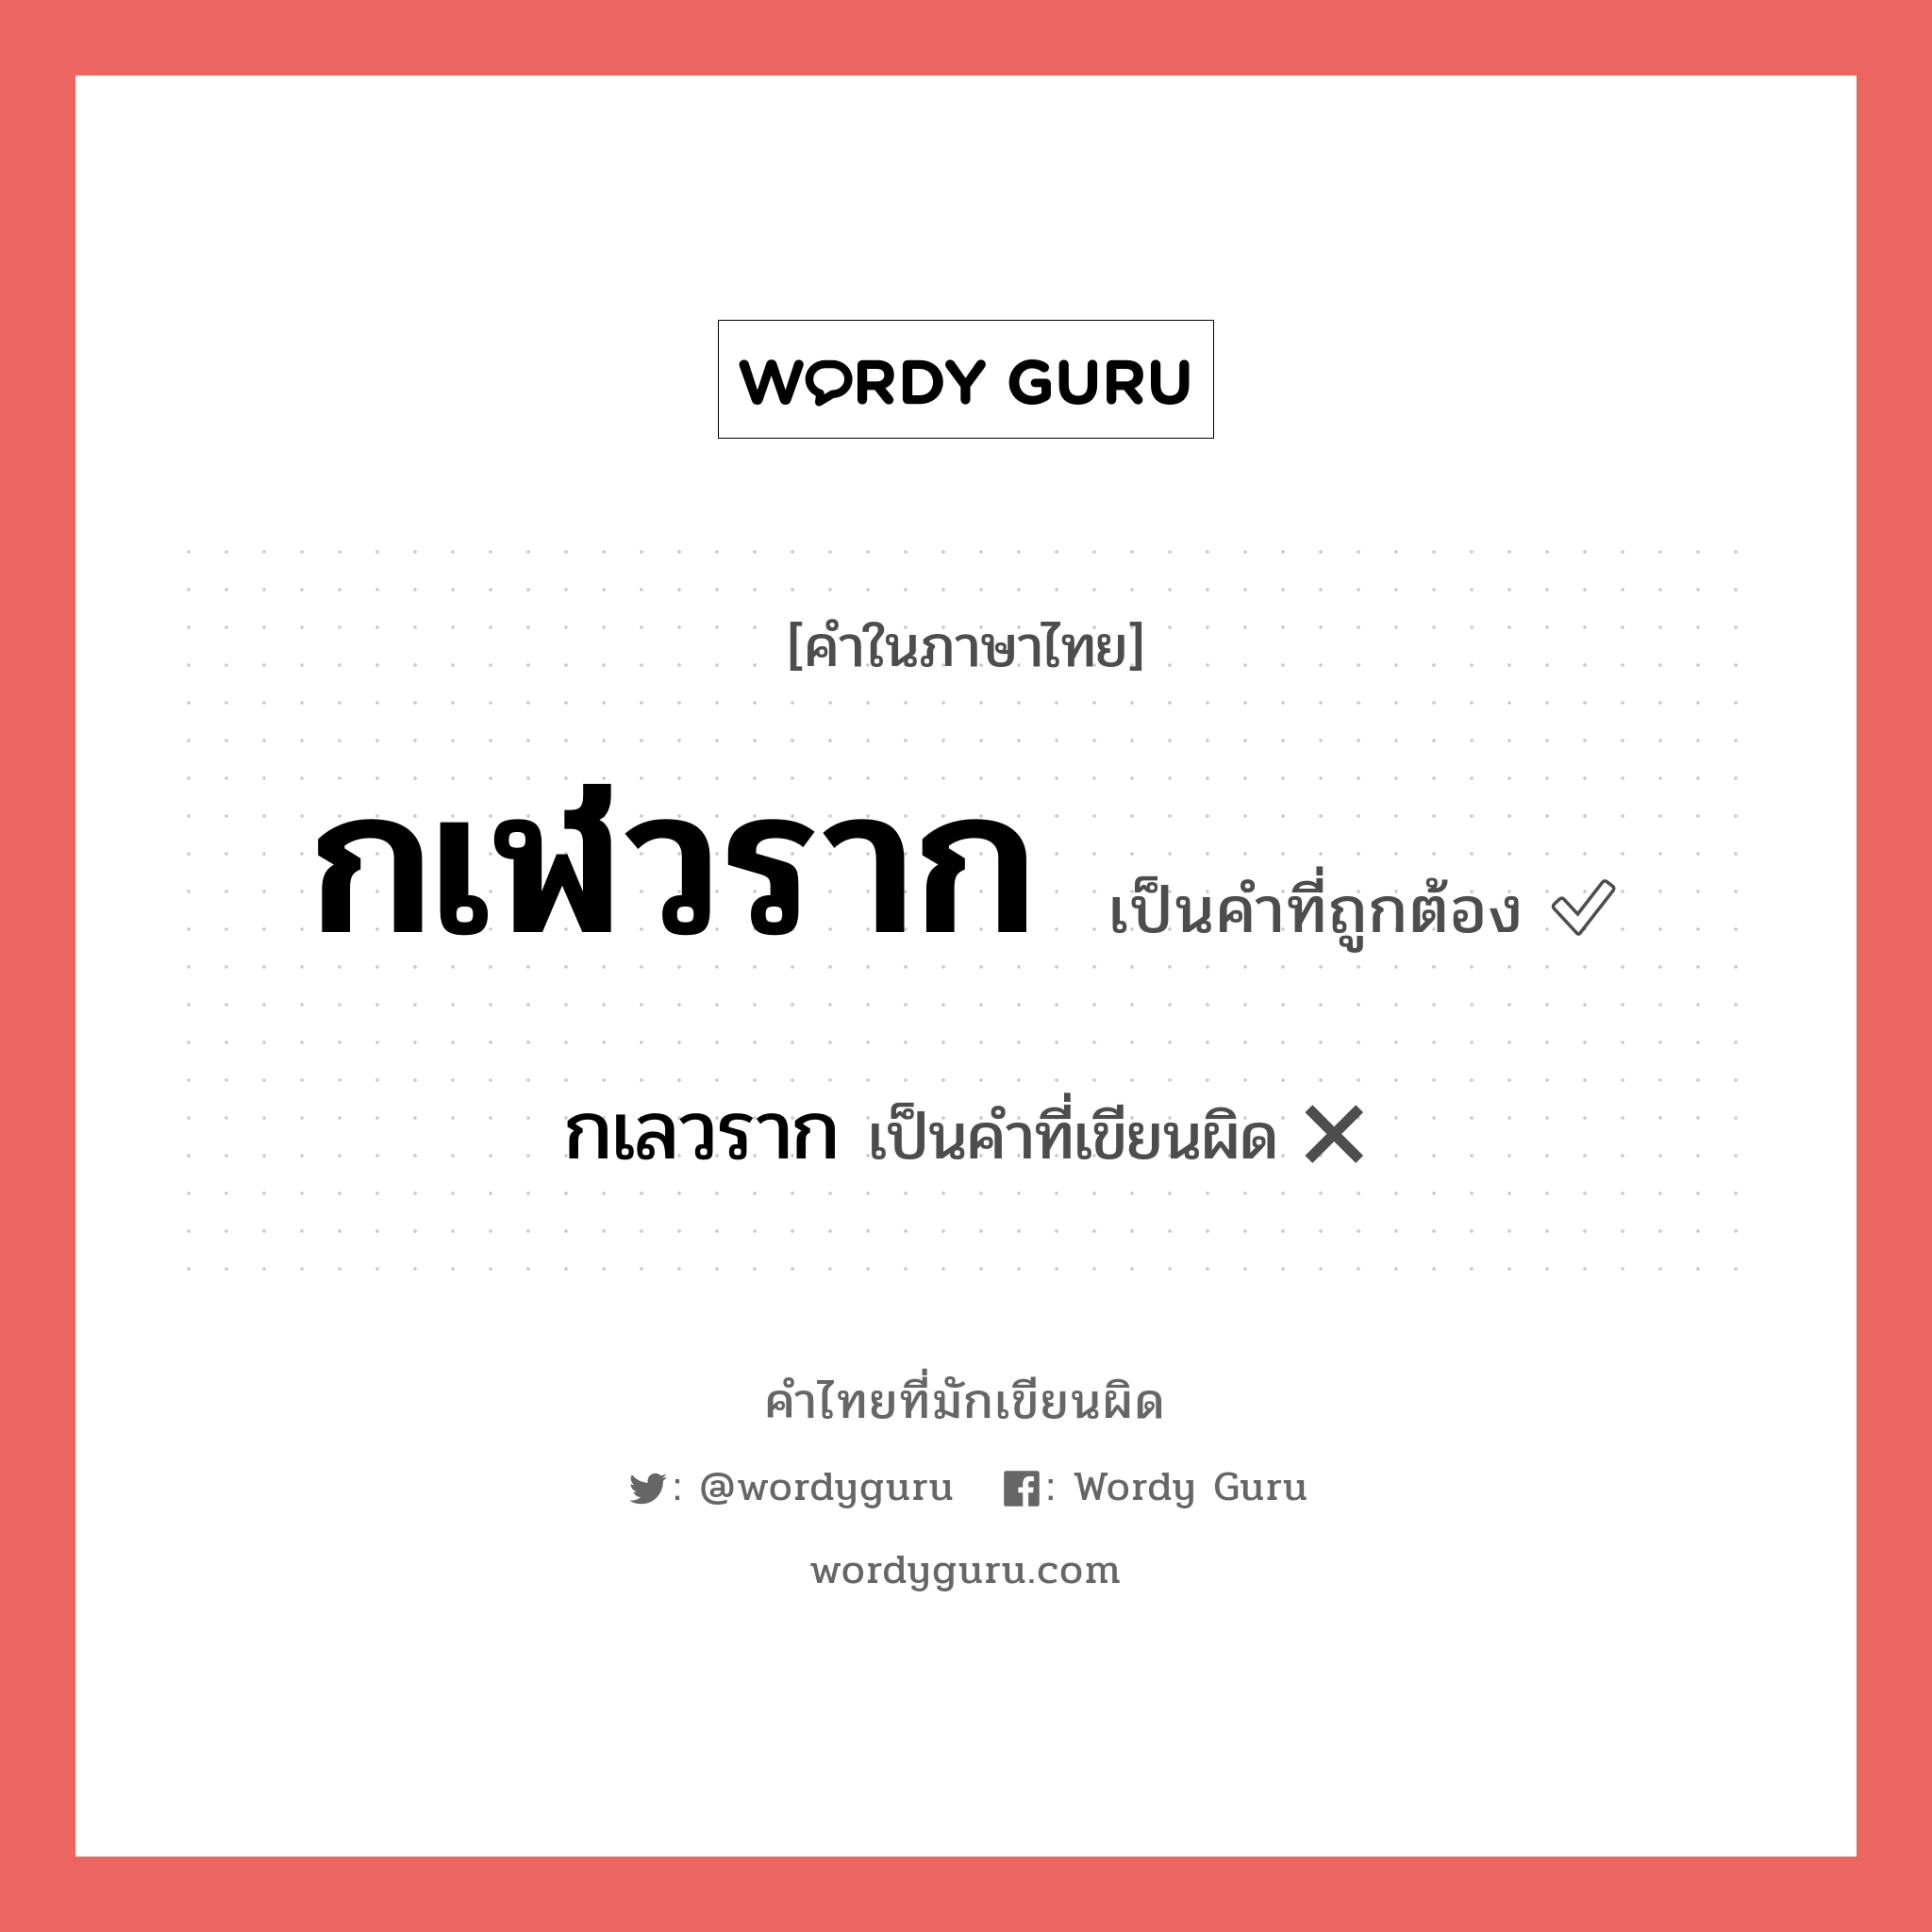 กเลวราก หรือ กเฬวราก คำไหนเขียนถูก?, คำในภาษาไทยที่มักเขียนผิด กเลวราก คำที่ผิด ❌ กเฬวราก